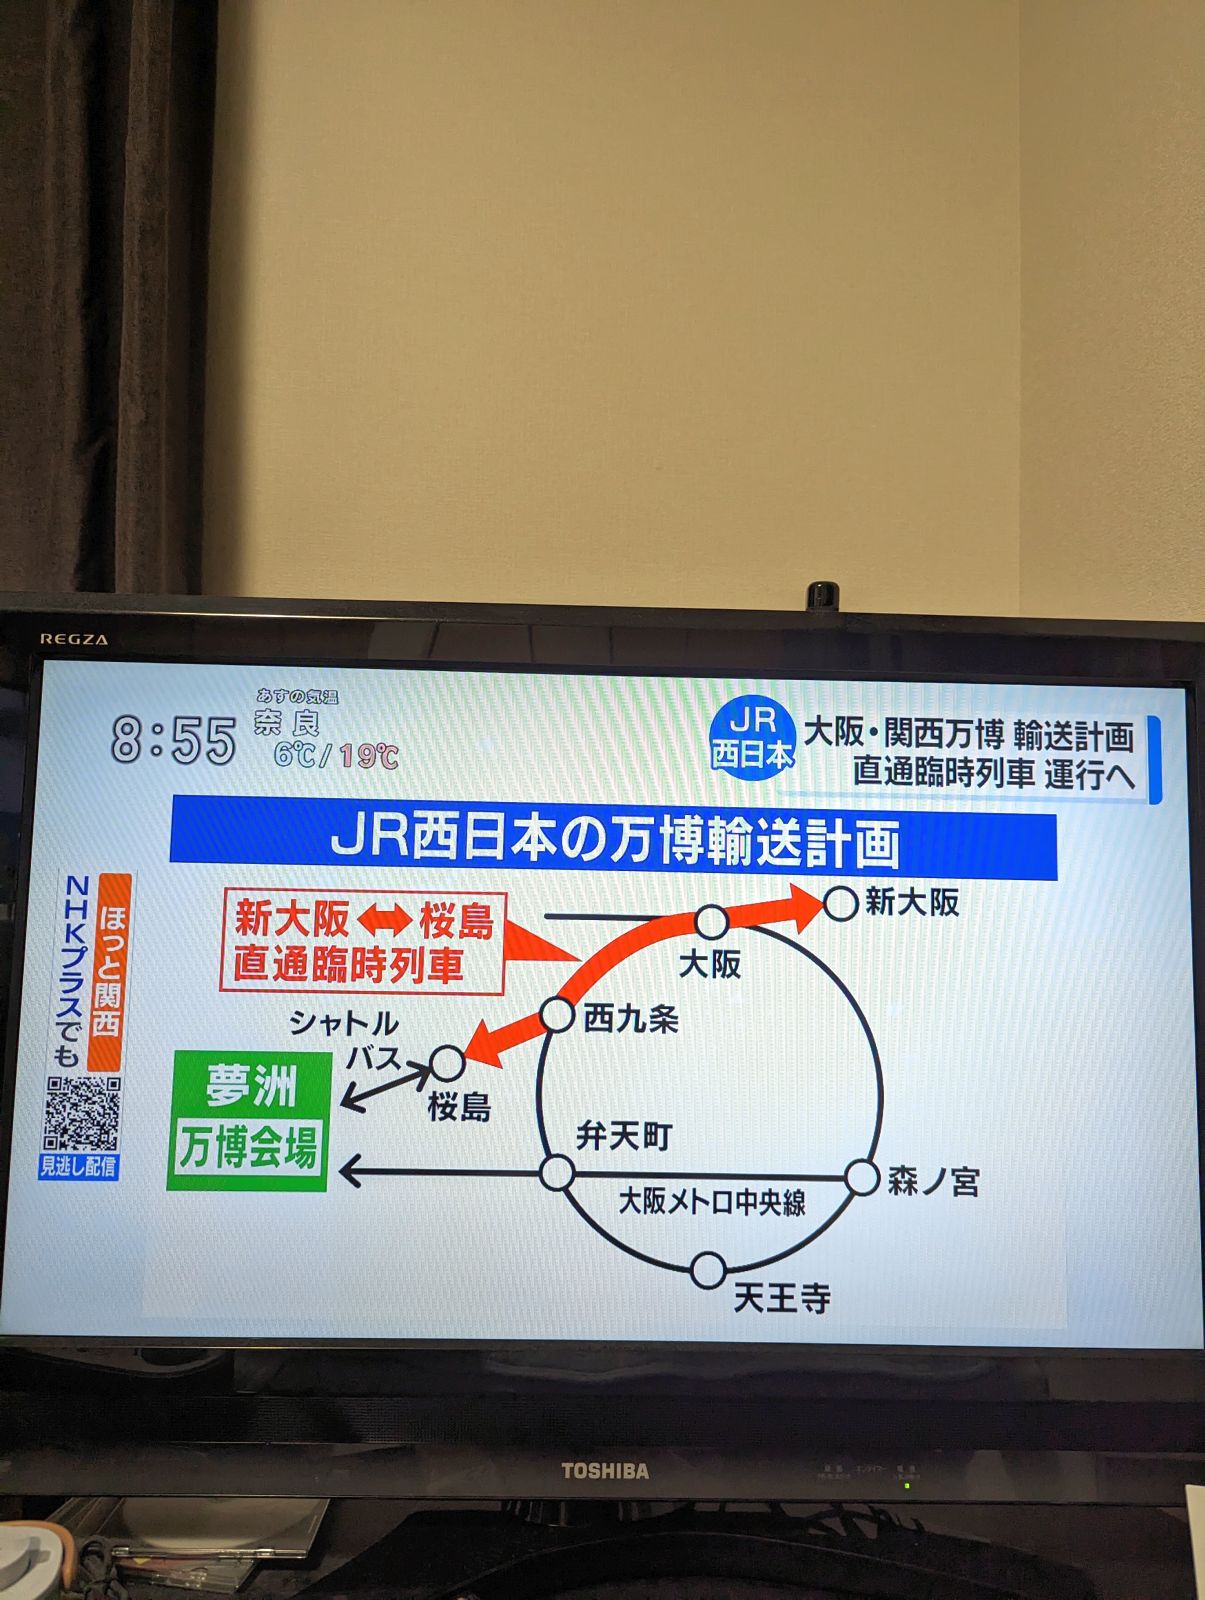 JR西日本の万博輸送計画